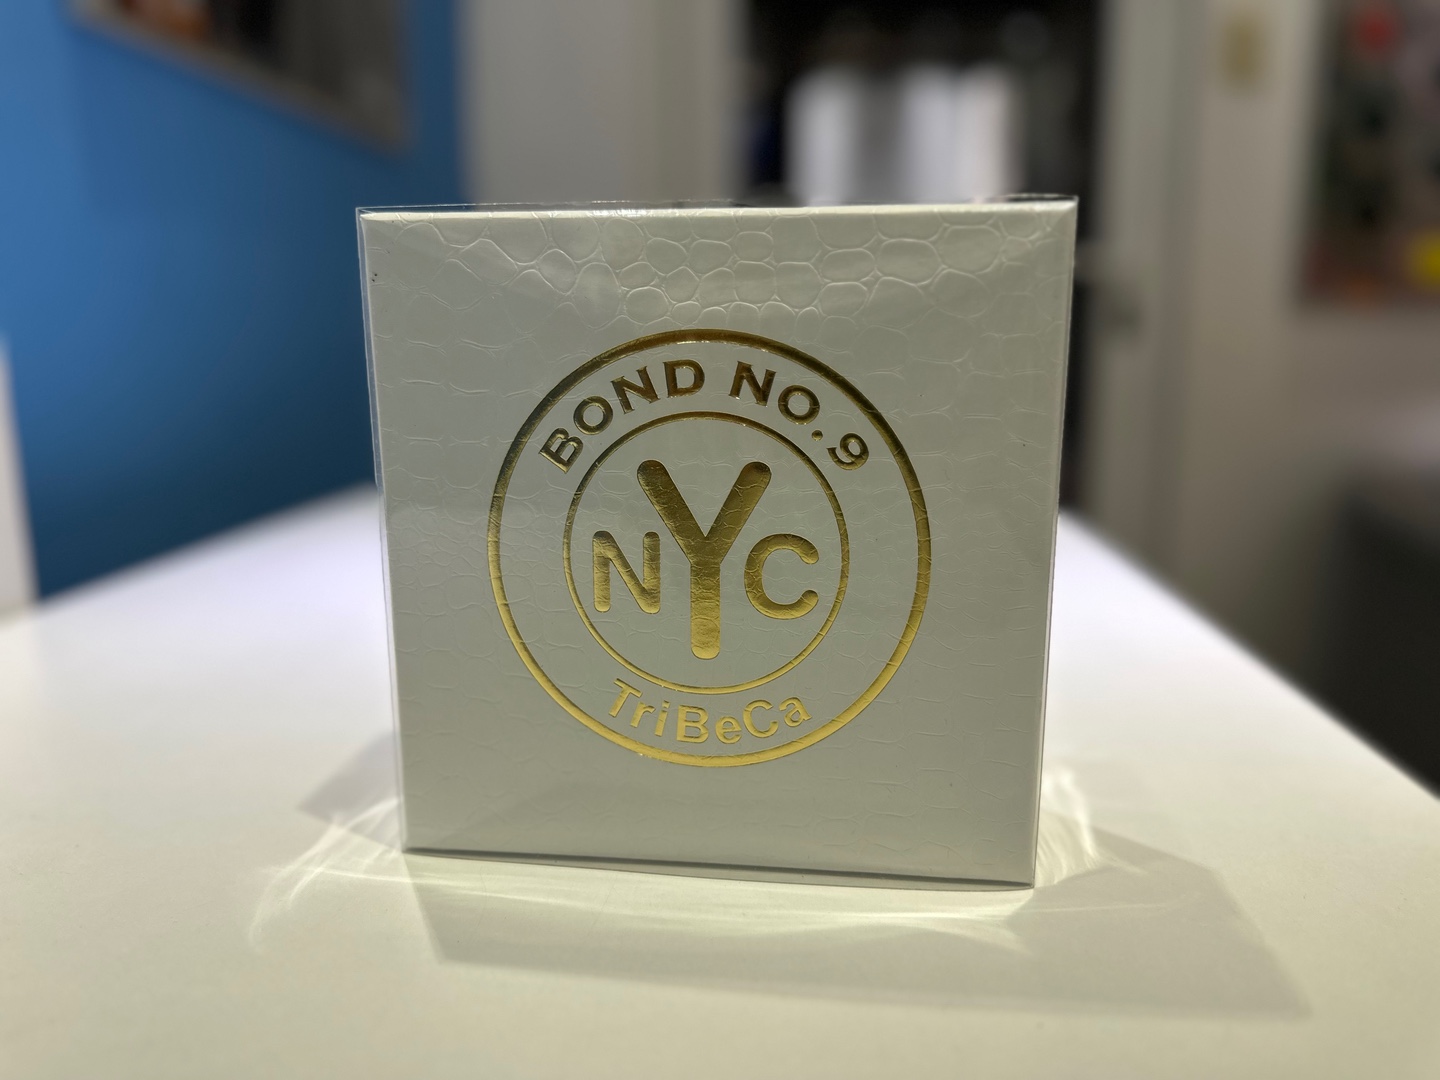 joyas, relojes y accesorios - Vendo Perfumes Bond NO. 9 TriBeCa - Nuevo - Original RD$ 18,500 NEG